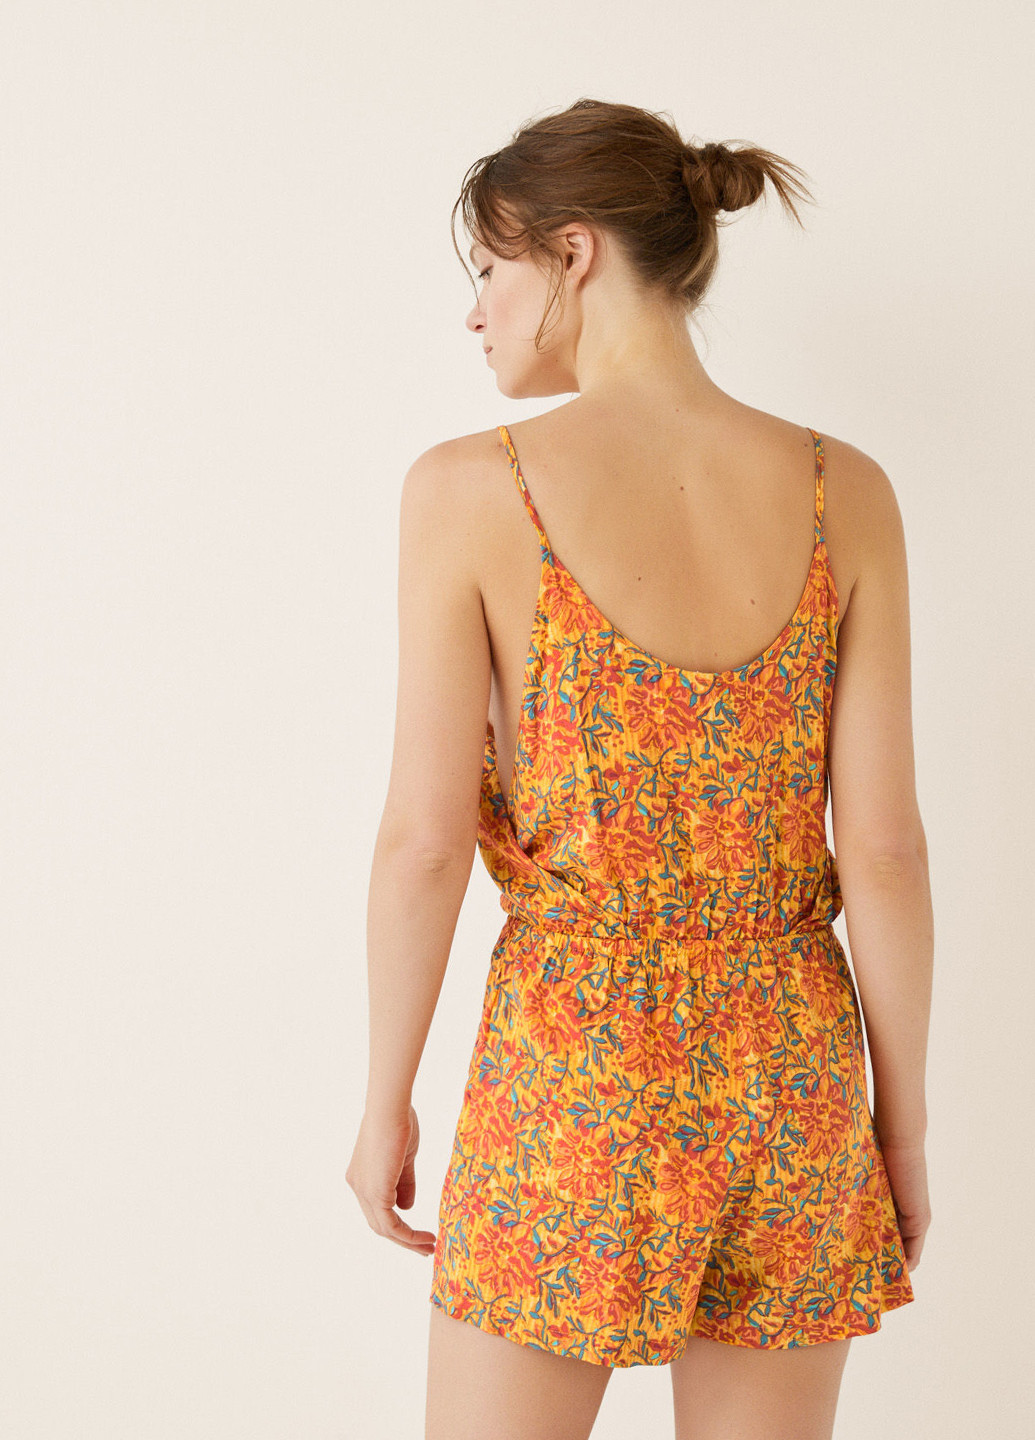 Комбинезон Women'secret комбинезон-шорты цветочный оранжевый пляжный вискоза